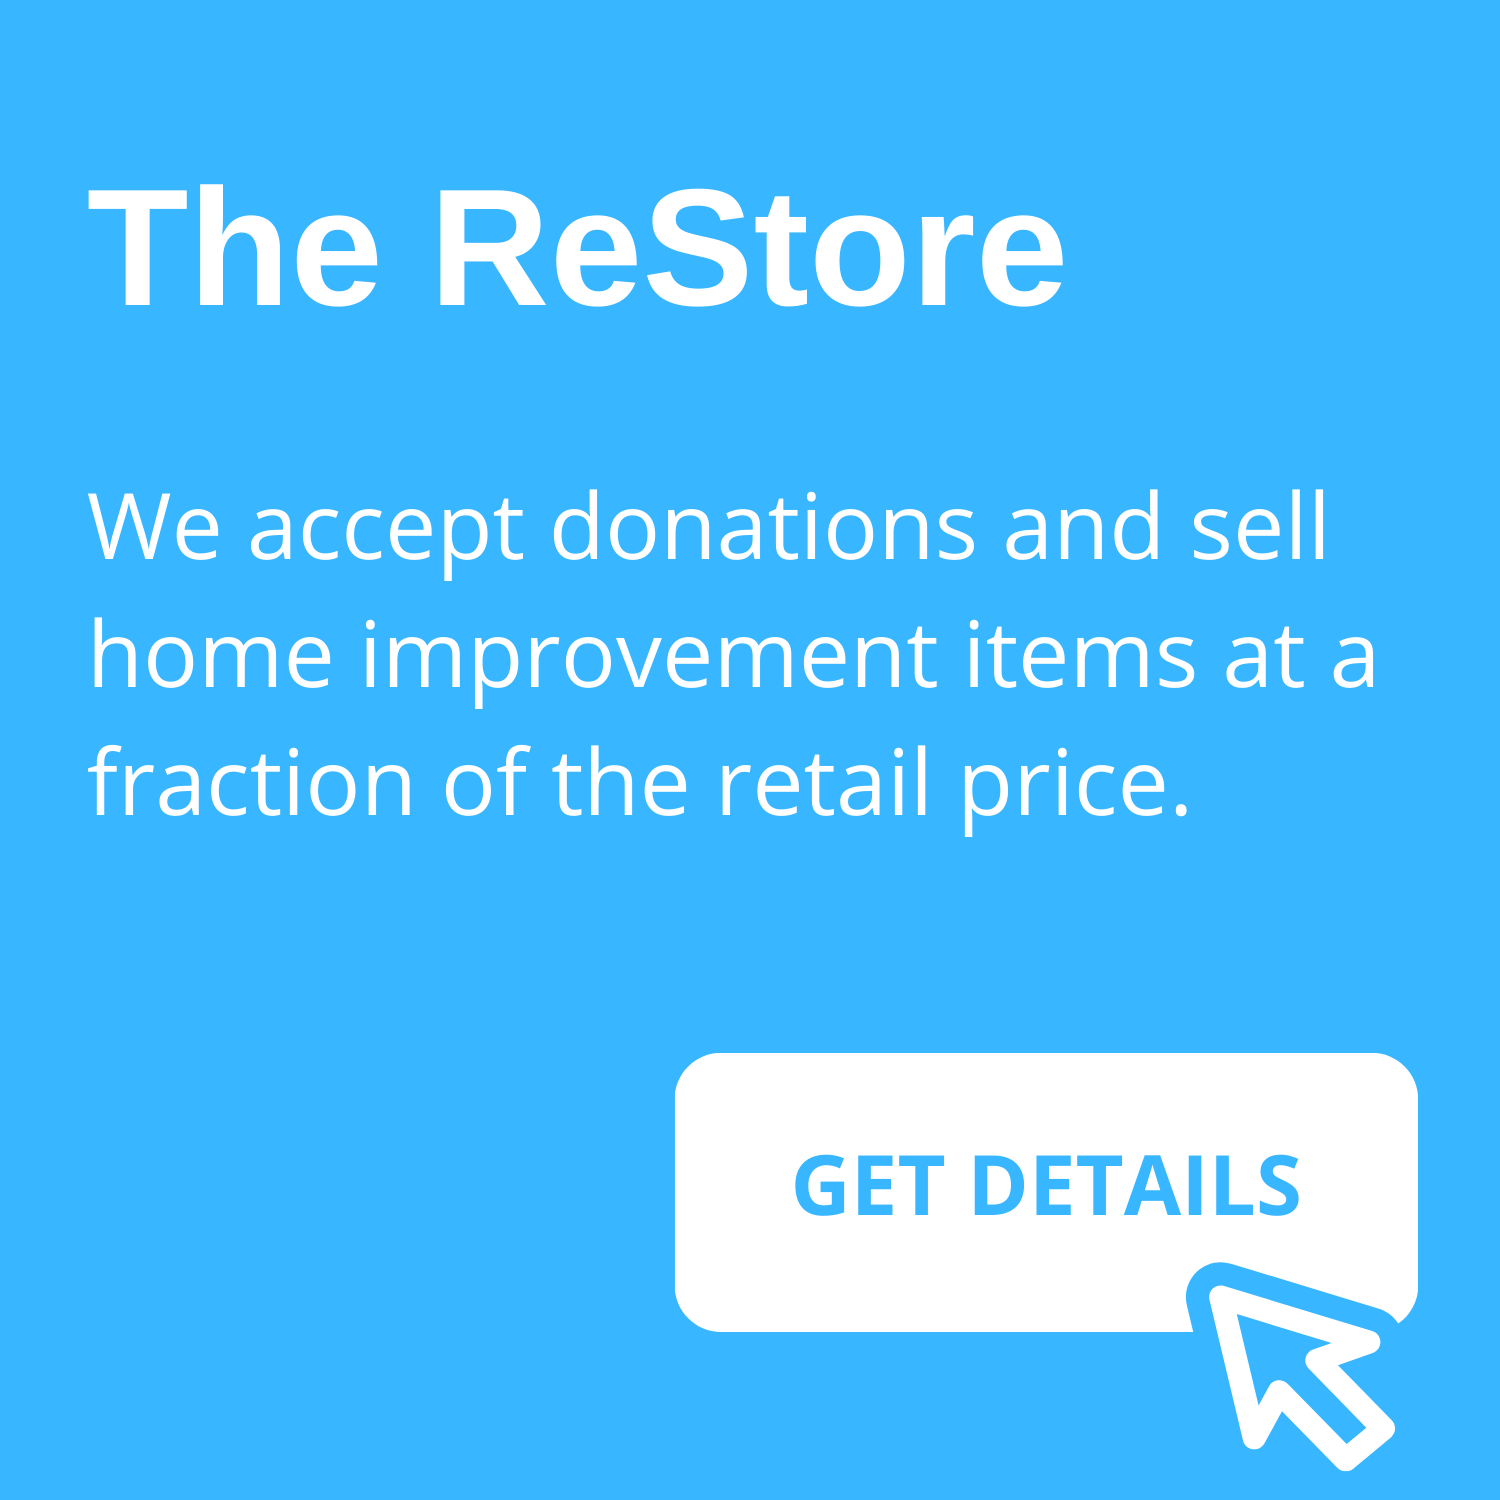 The ReStore